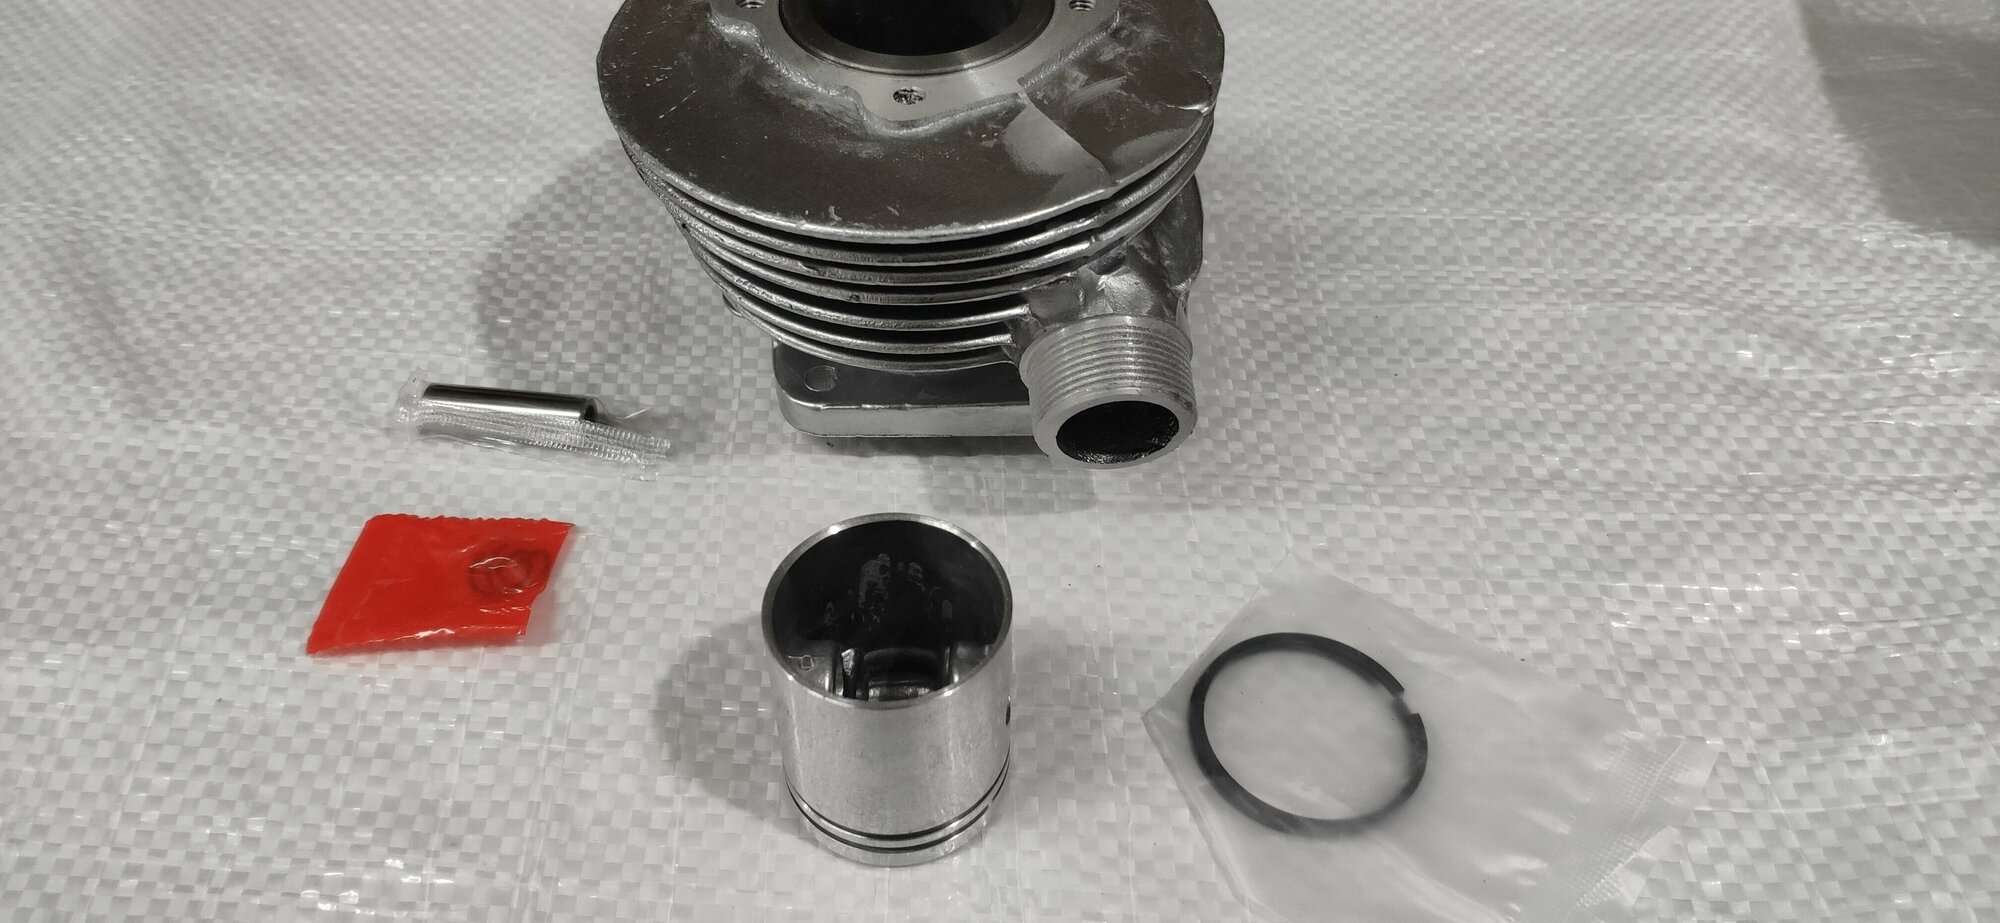 Цилиндр Веломотор Д6 Д8 (D 37.8 mm) с поршнем+палец+кольца+стопорные кольца ттмр